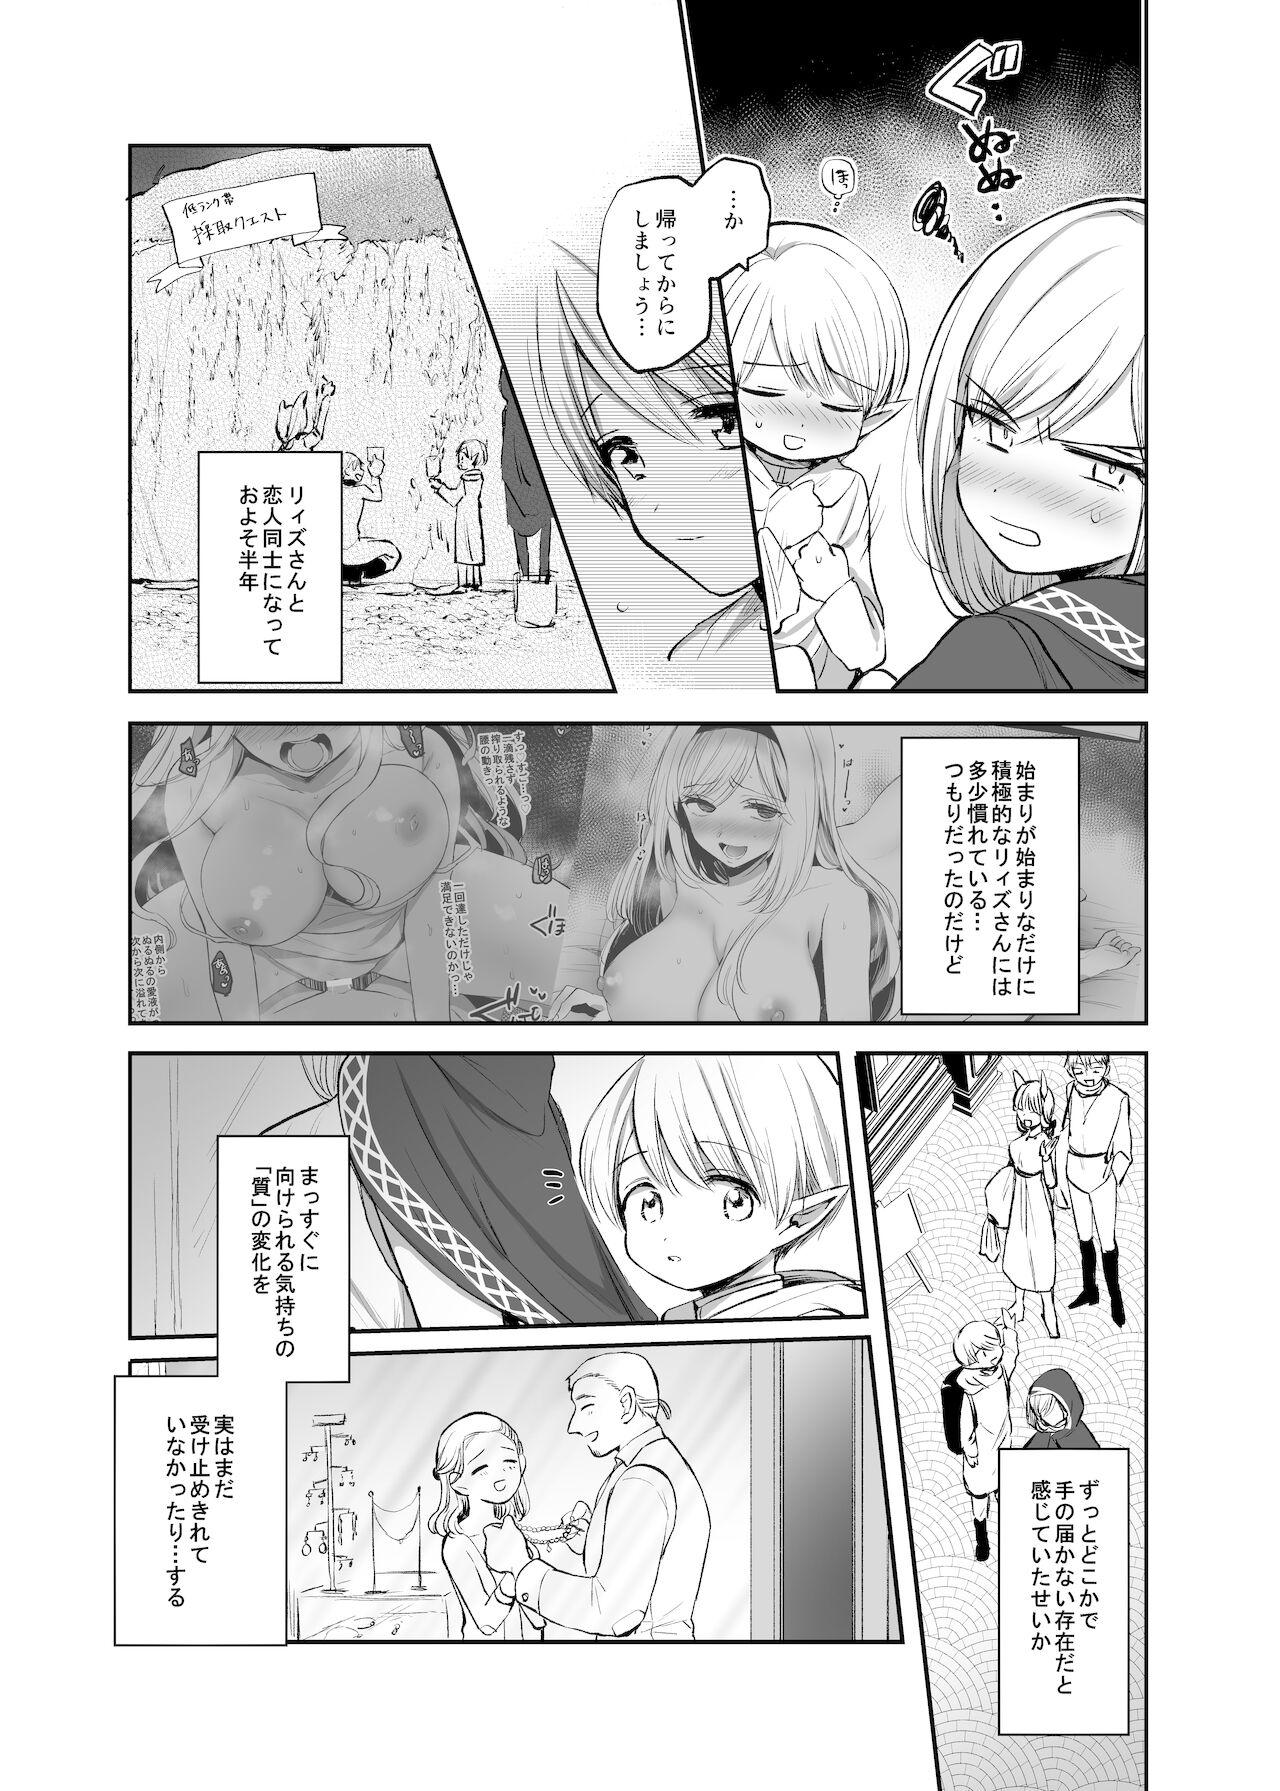 Fudendo 嫌われ女を助けたら、ハッピー大団円を迎えた! - Original Strap On - Page 11